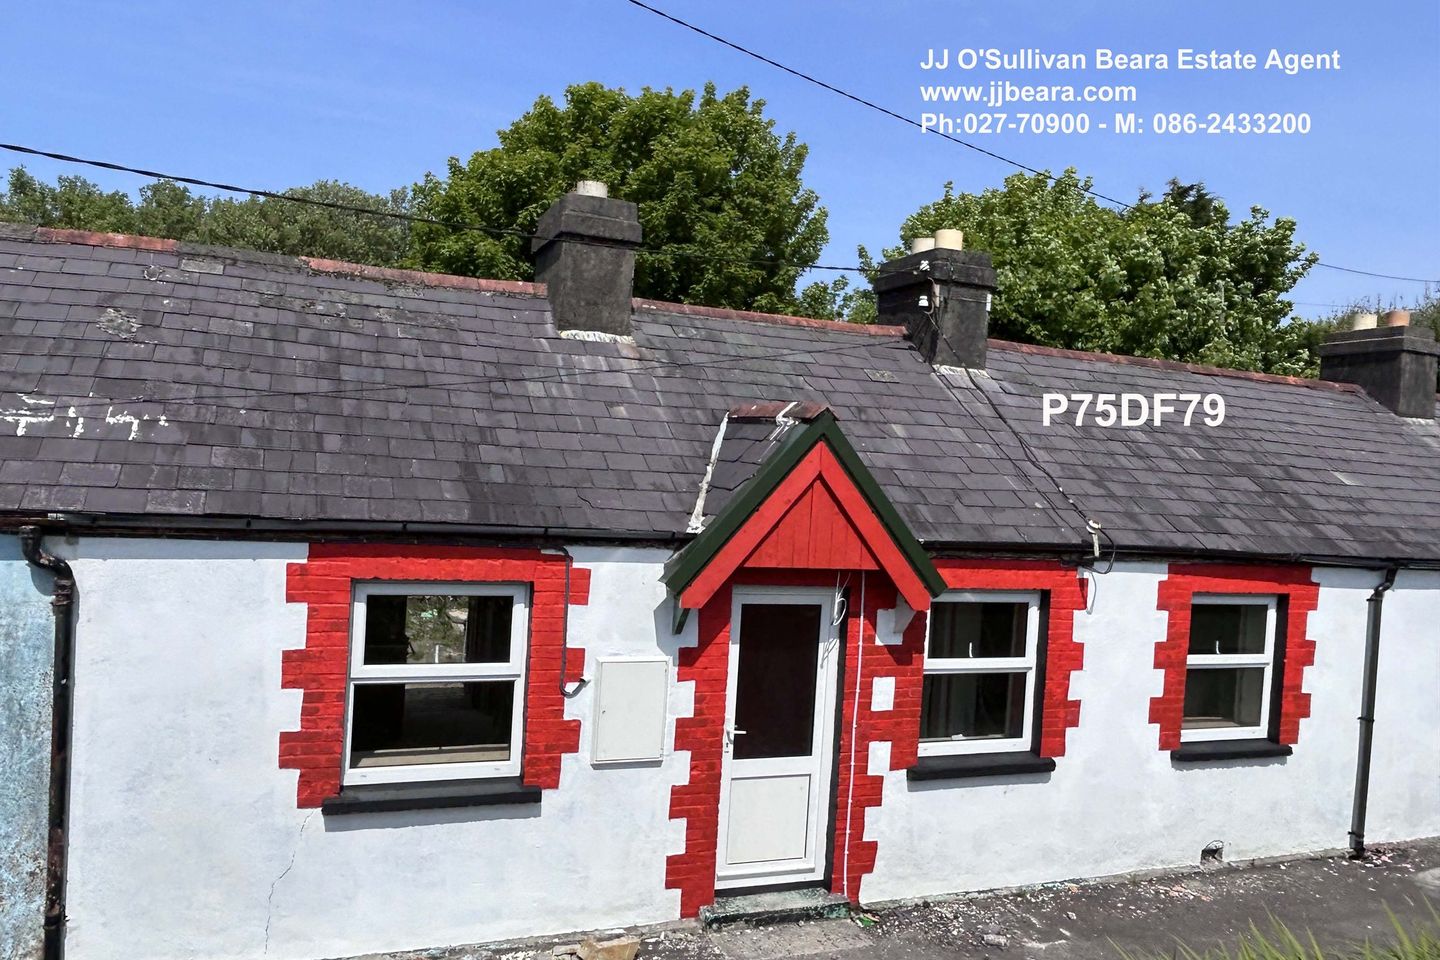 20 Foildarrig Cottages, Castletownbere, Co. Cork, P75DF79